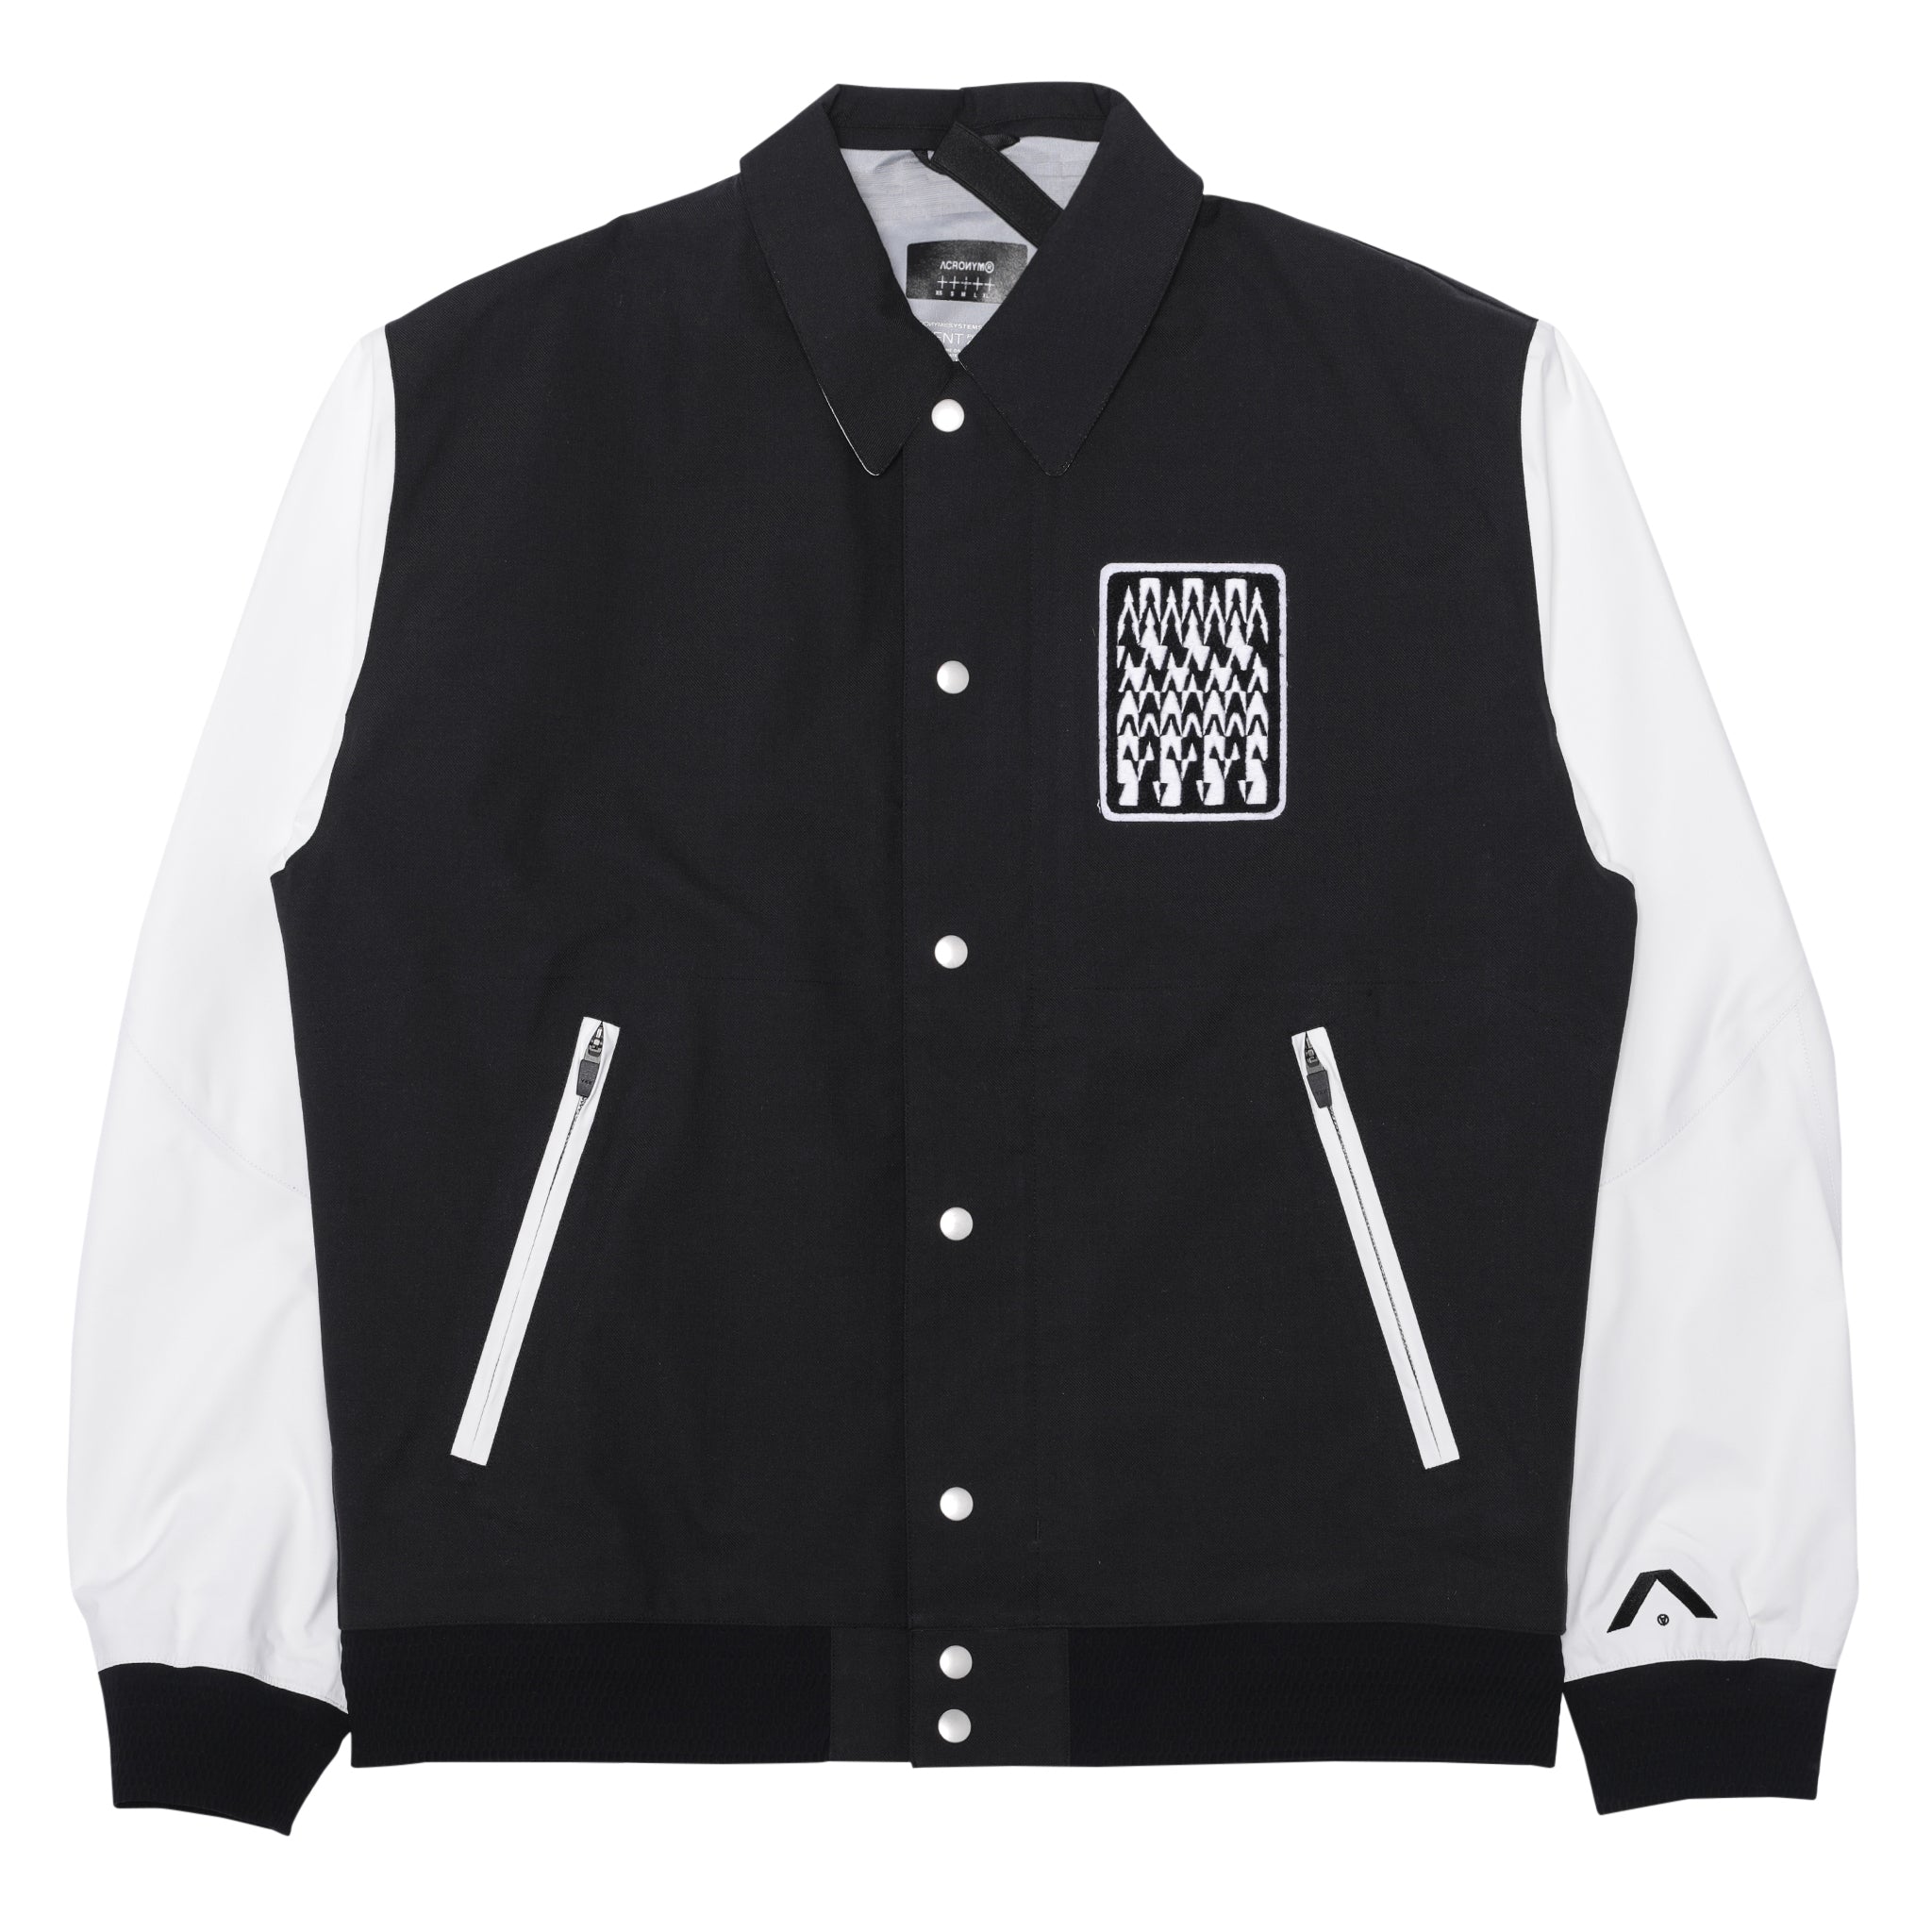 Acronym J94-VT Varsity Jacket (Black, White) – The Darkside Initiative